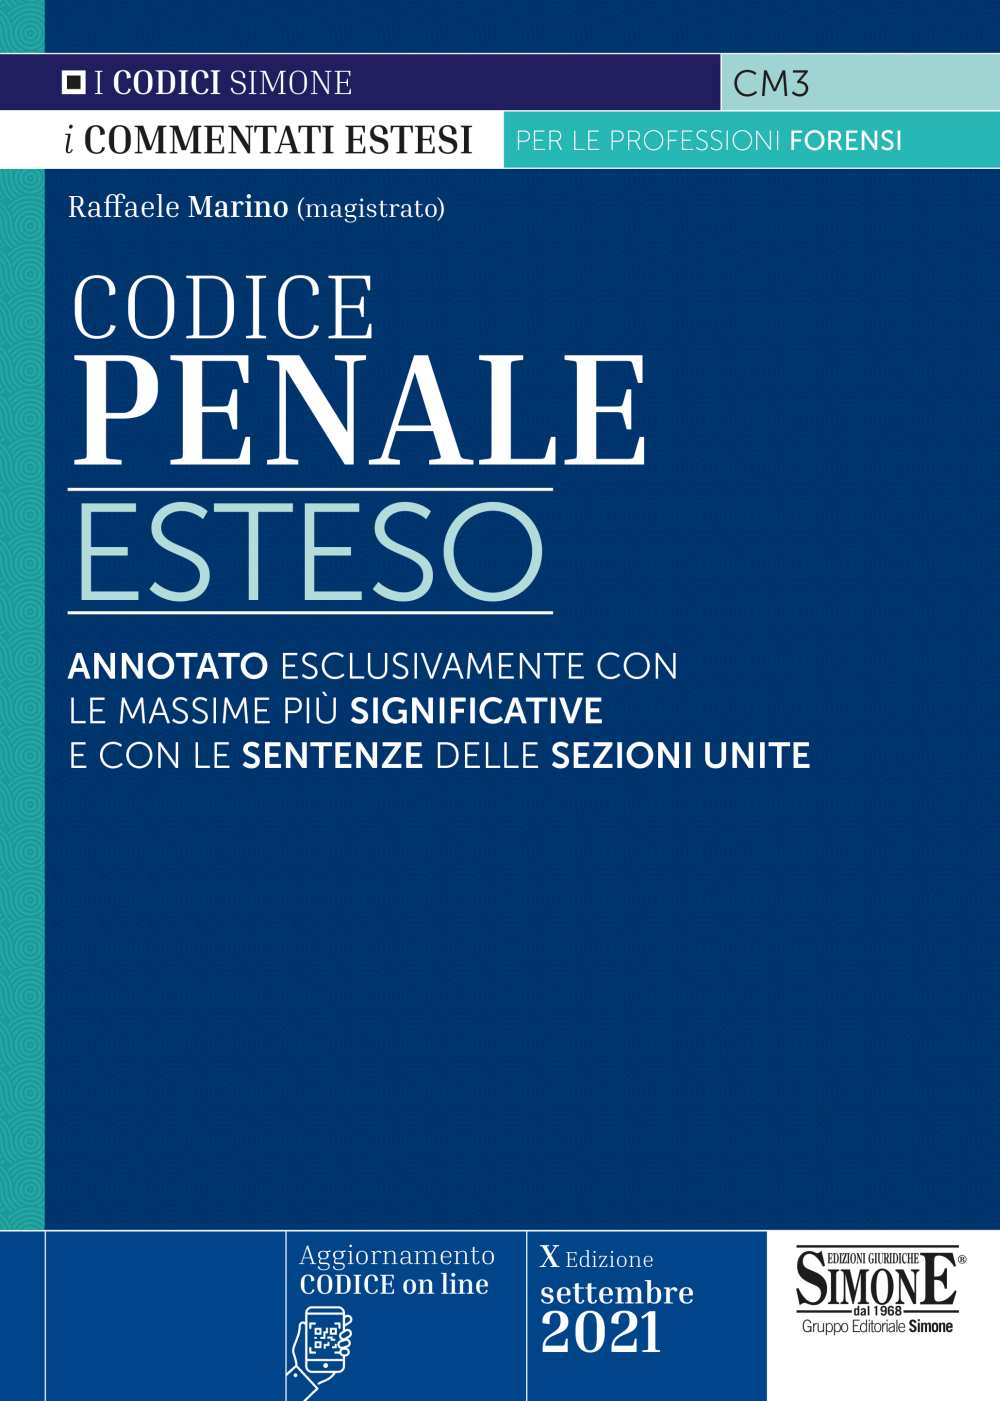 Codice Penale Esteso - CM3